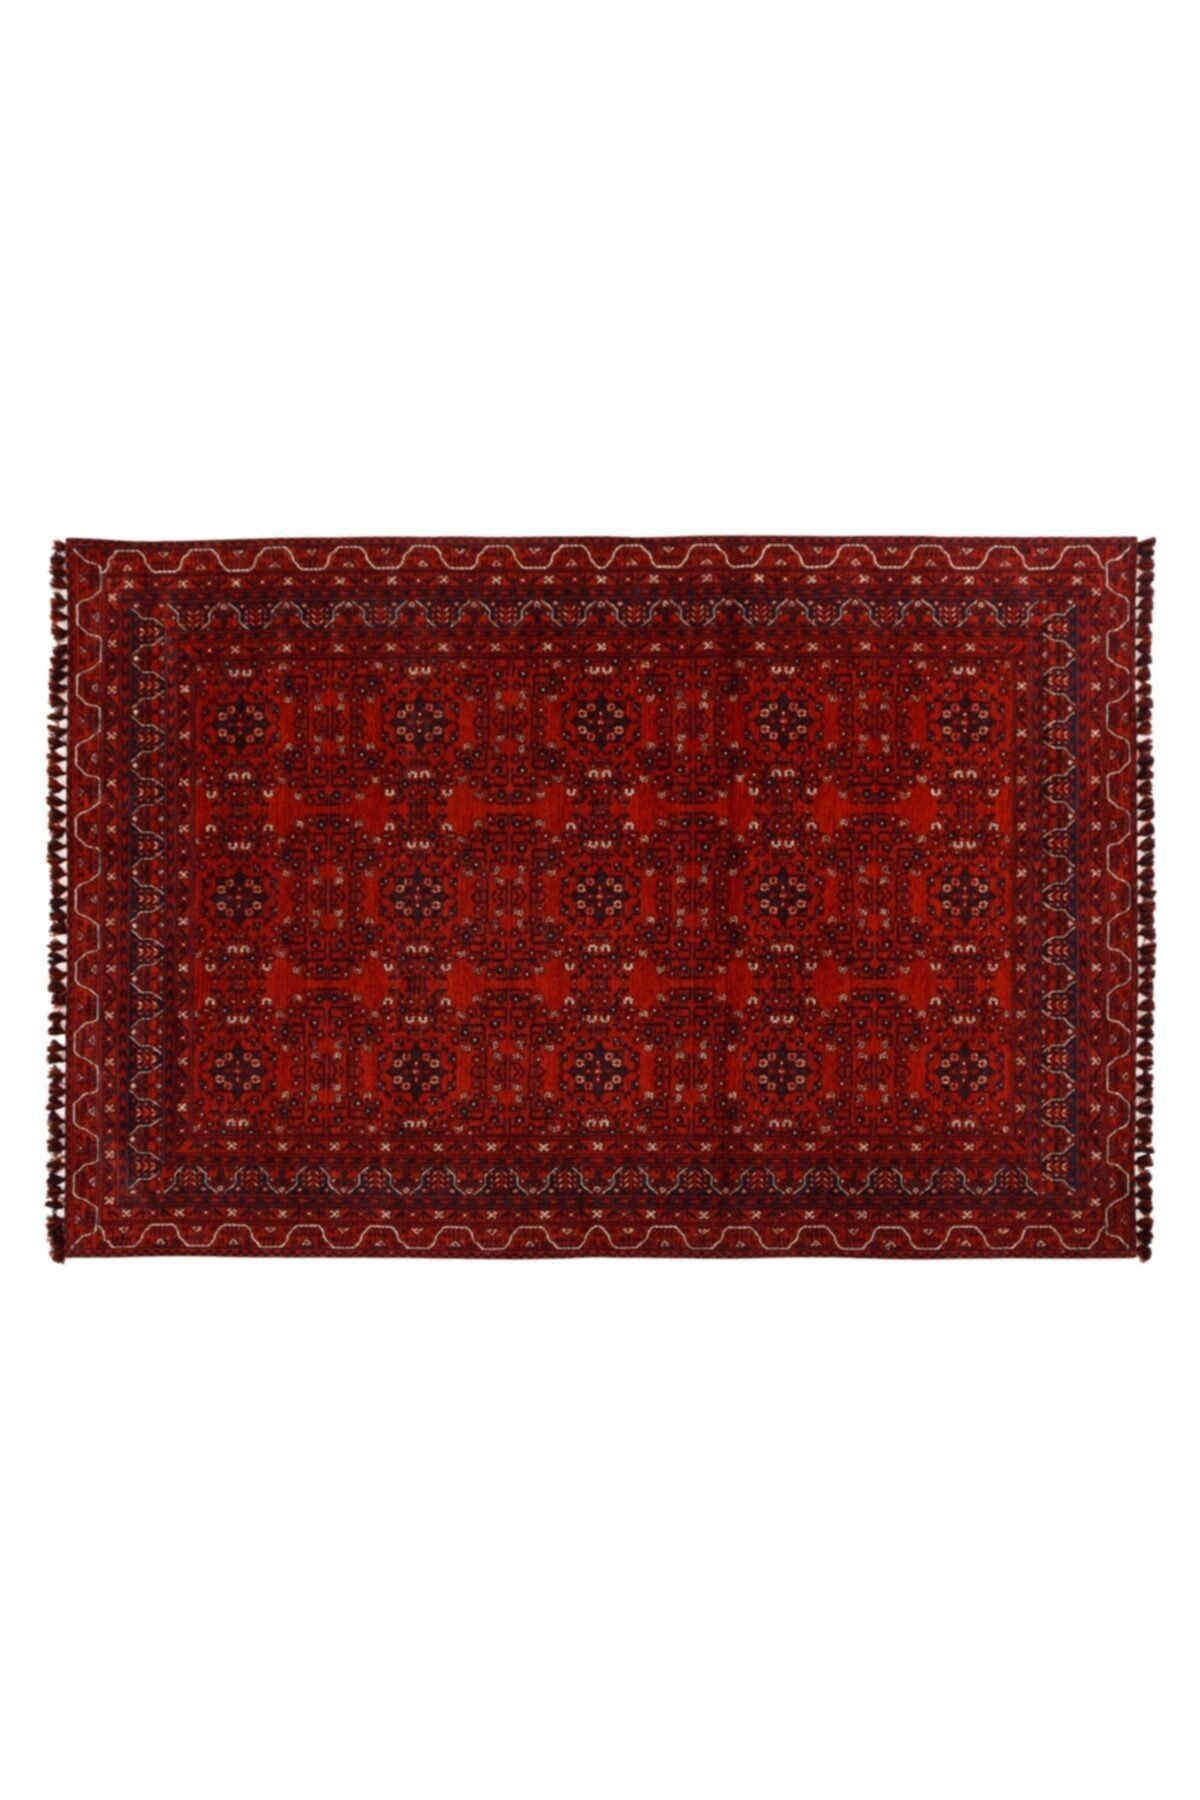 Mudo Concept Jına Bold Halı Kırmızı Lacivert 160x230cm